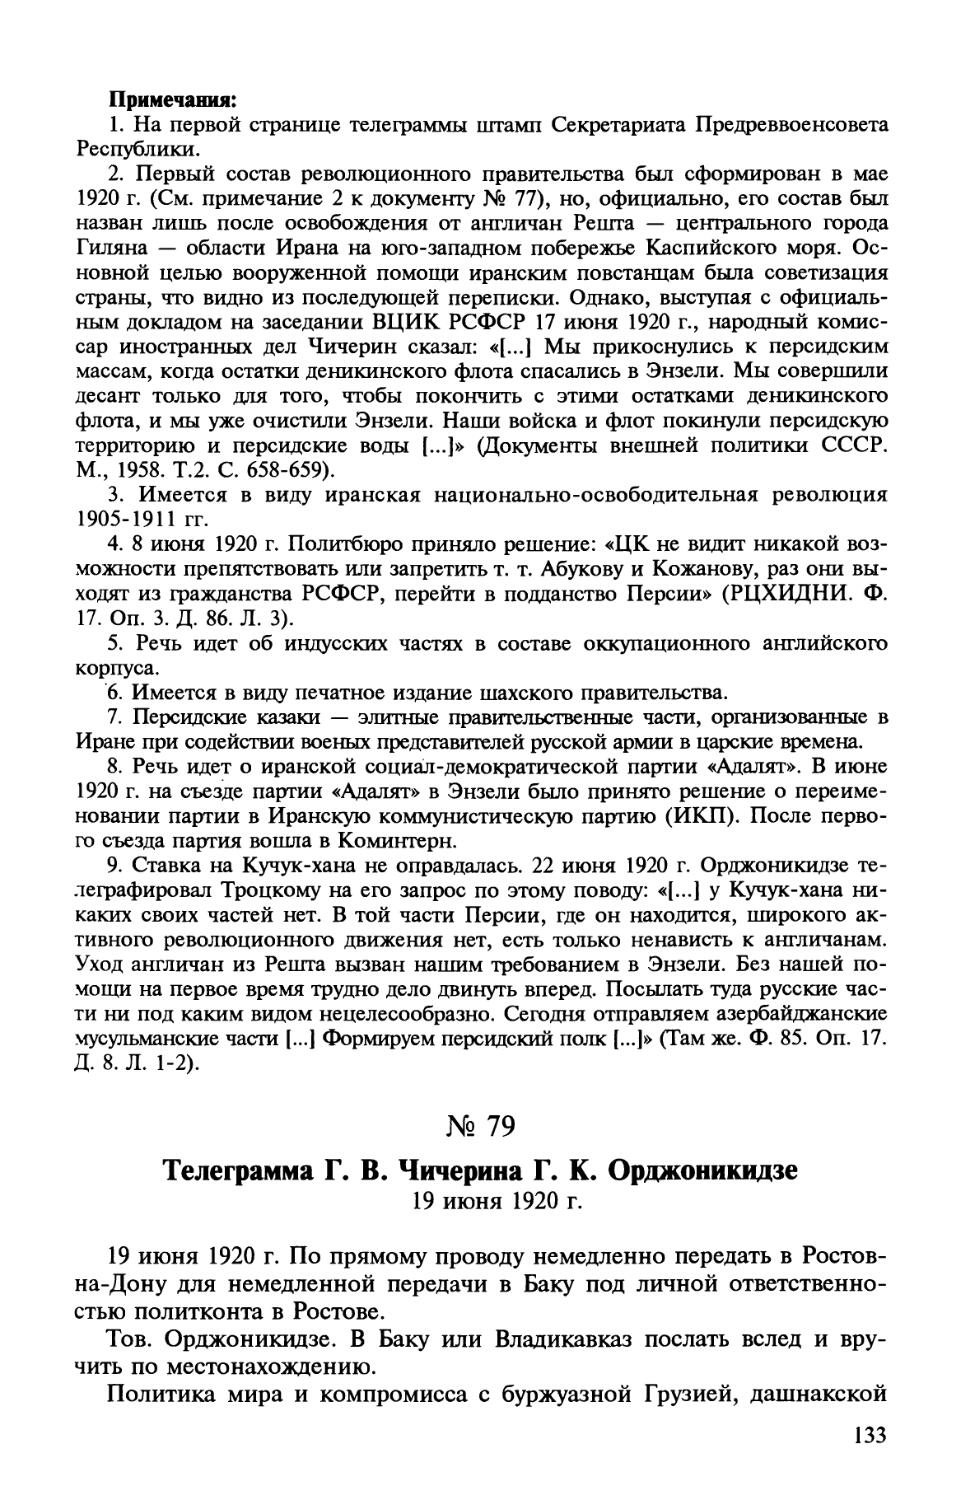 79. Телеграмма Г. В. Чичерина Г. К. Орджоникидзе. 19 июня 1920 г.